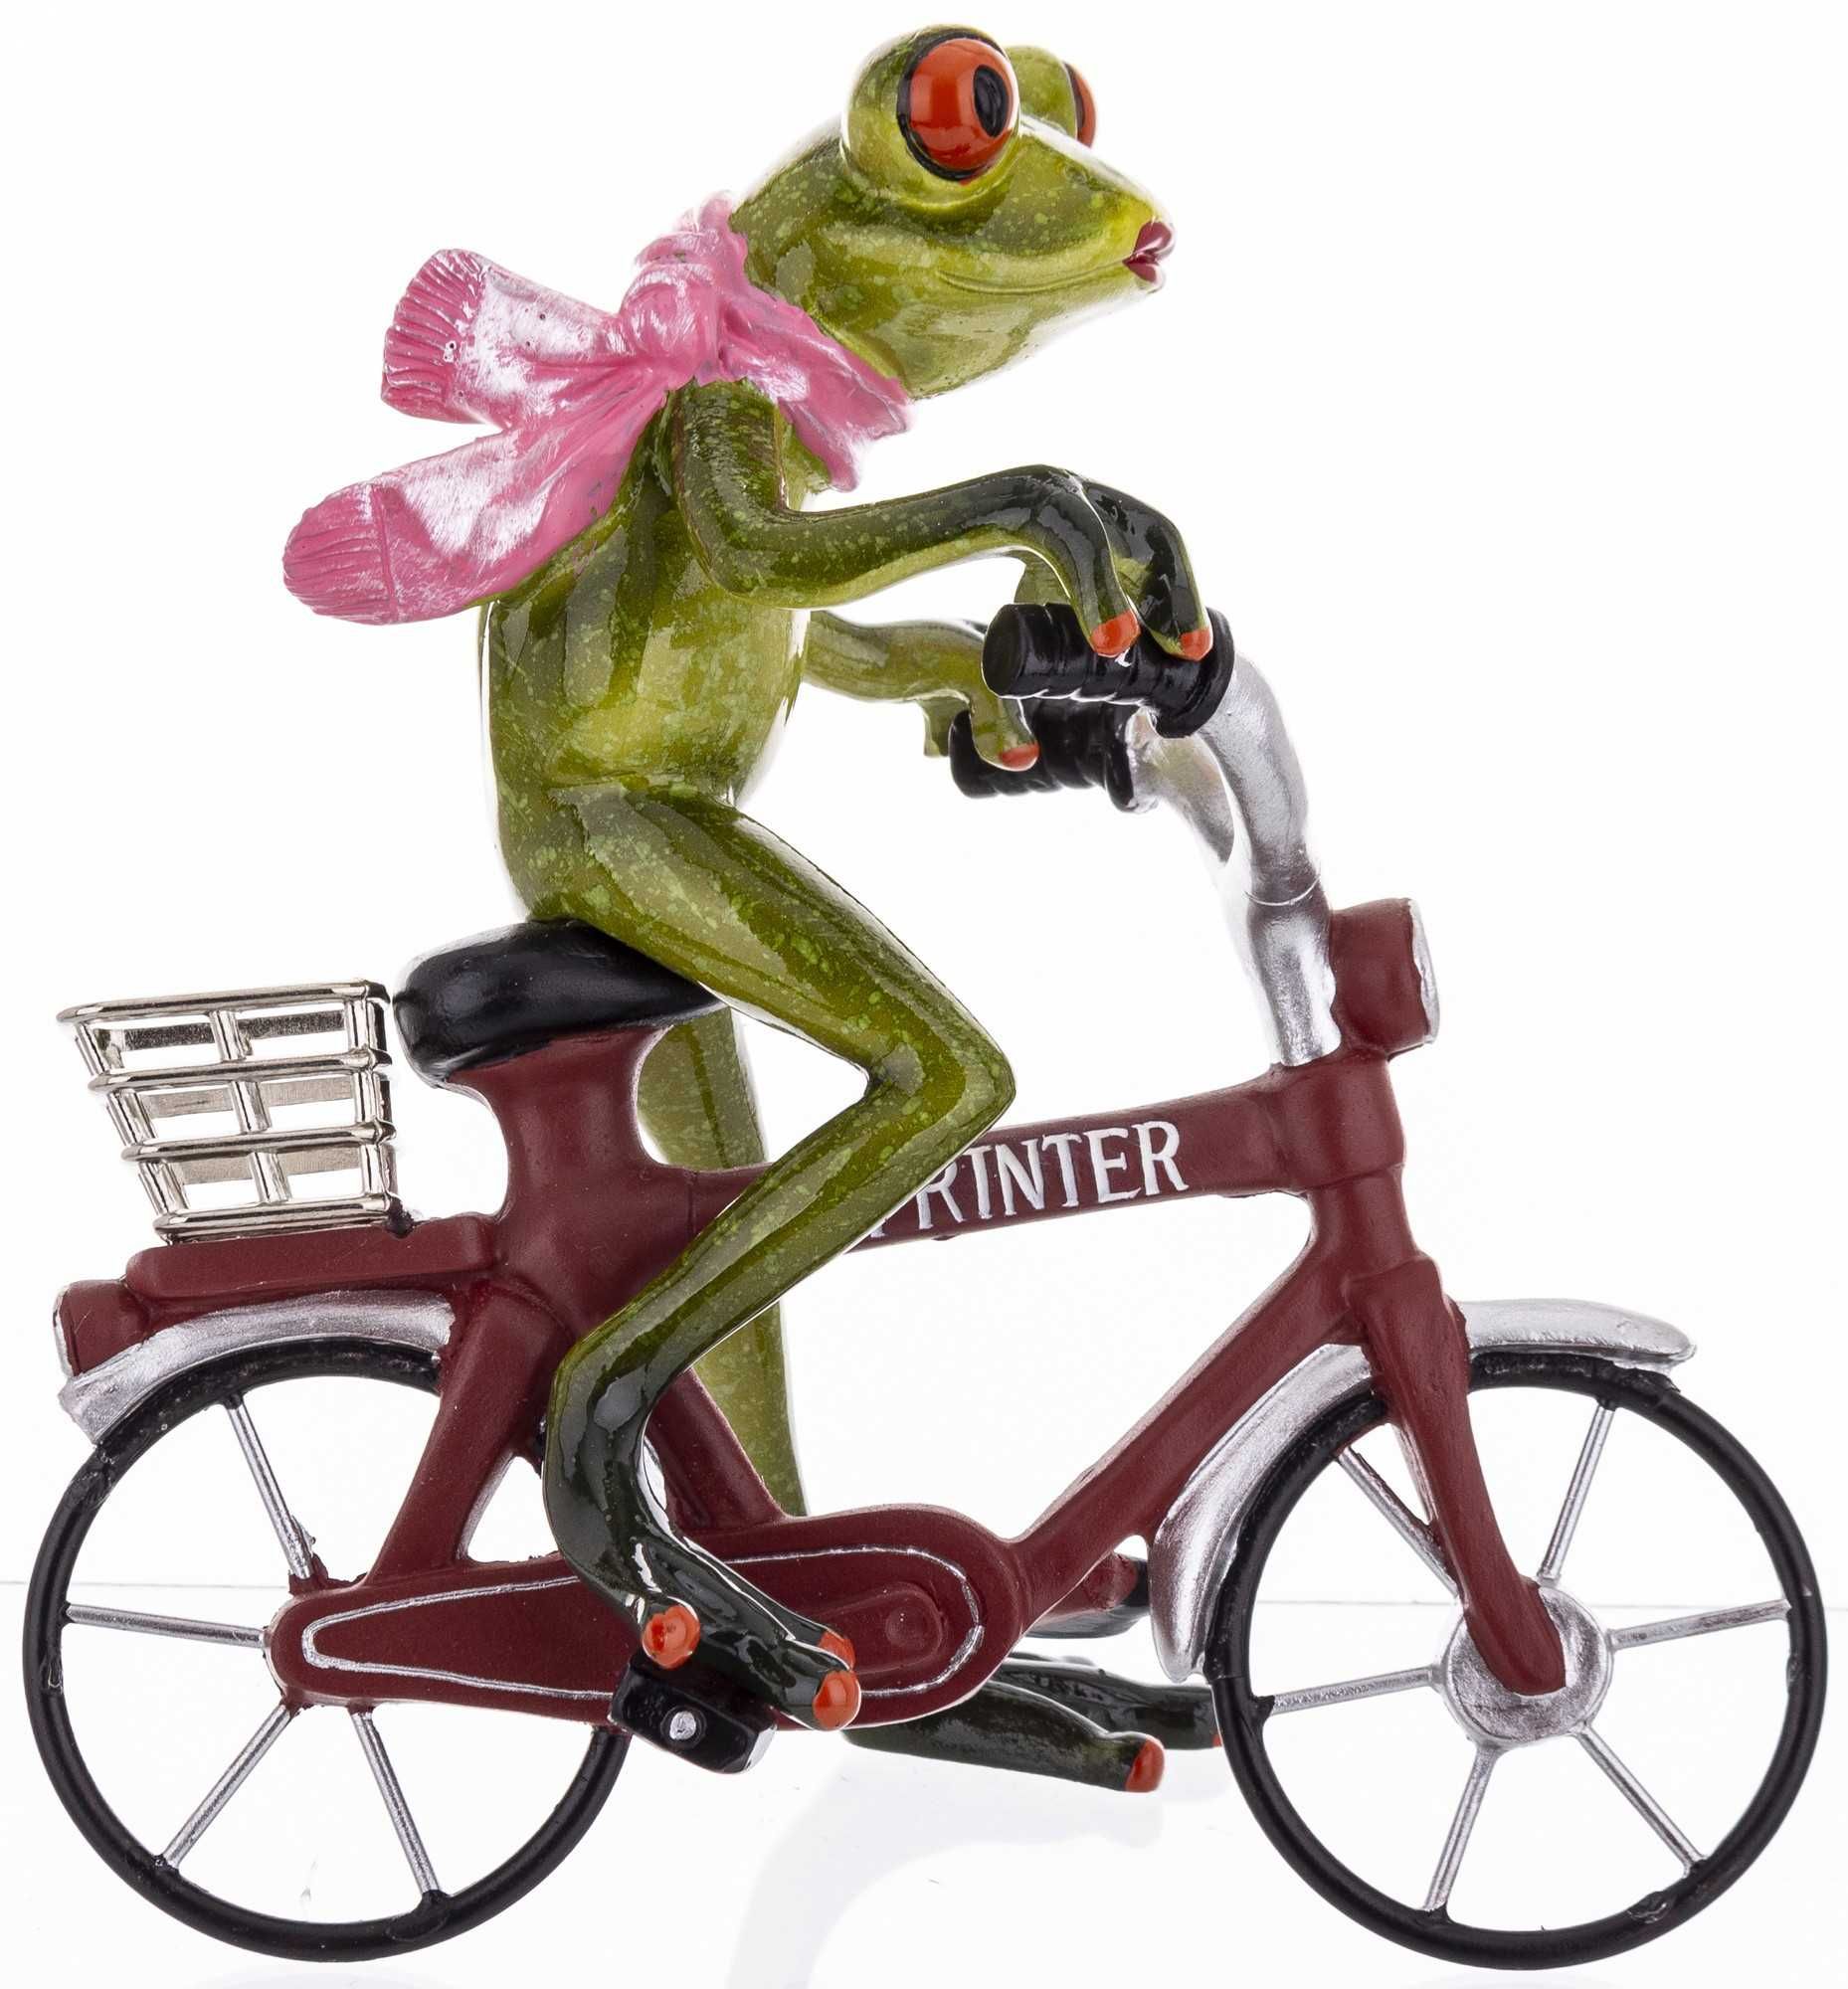 Żaba na rowerze żaba rowerzysta dekoracja